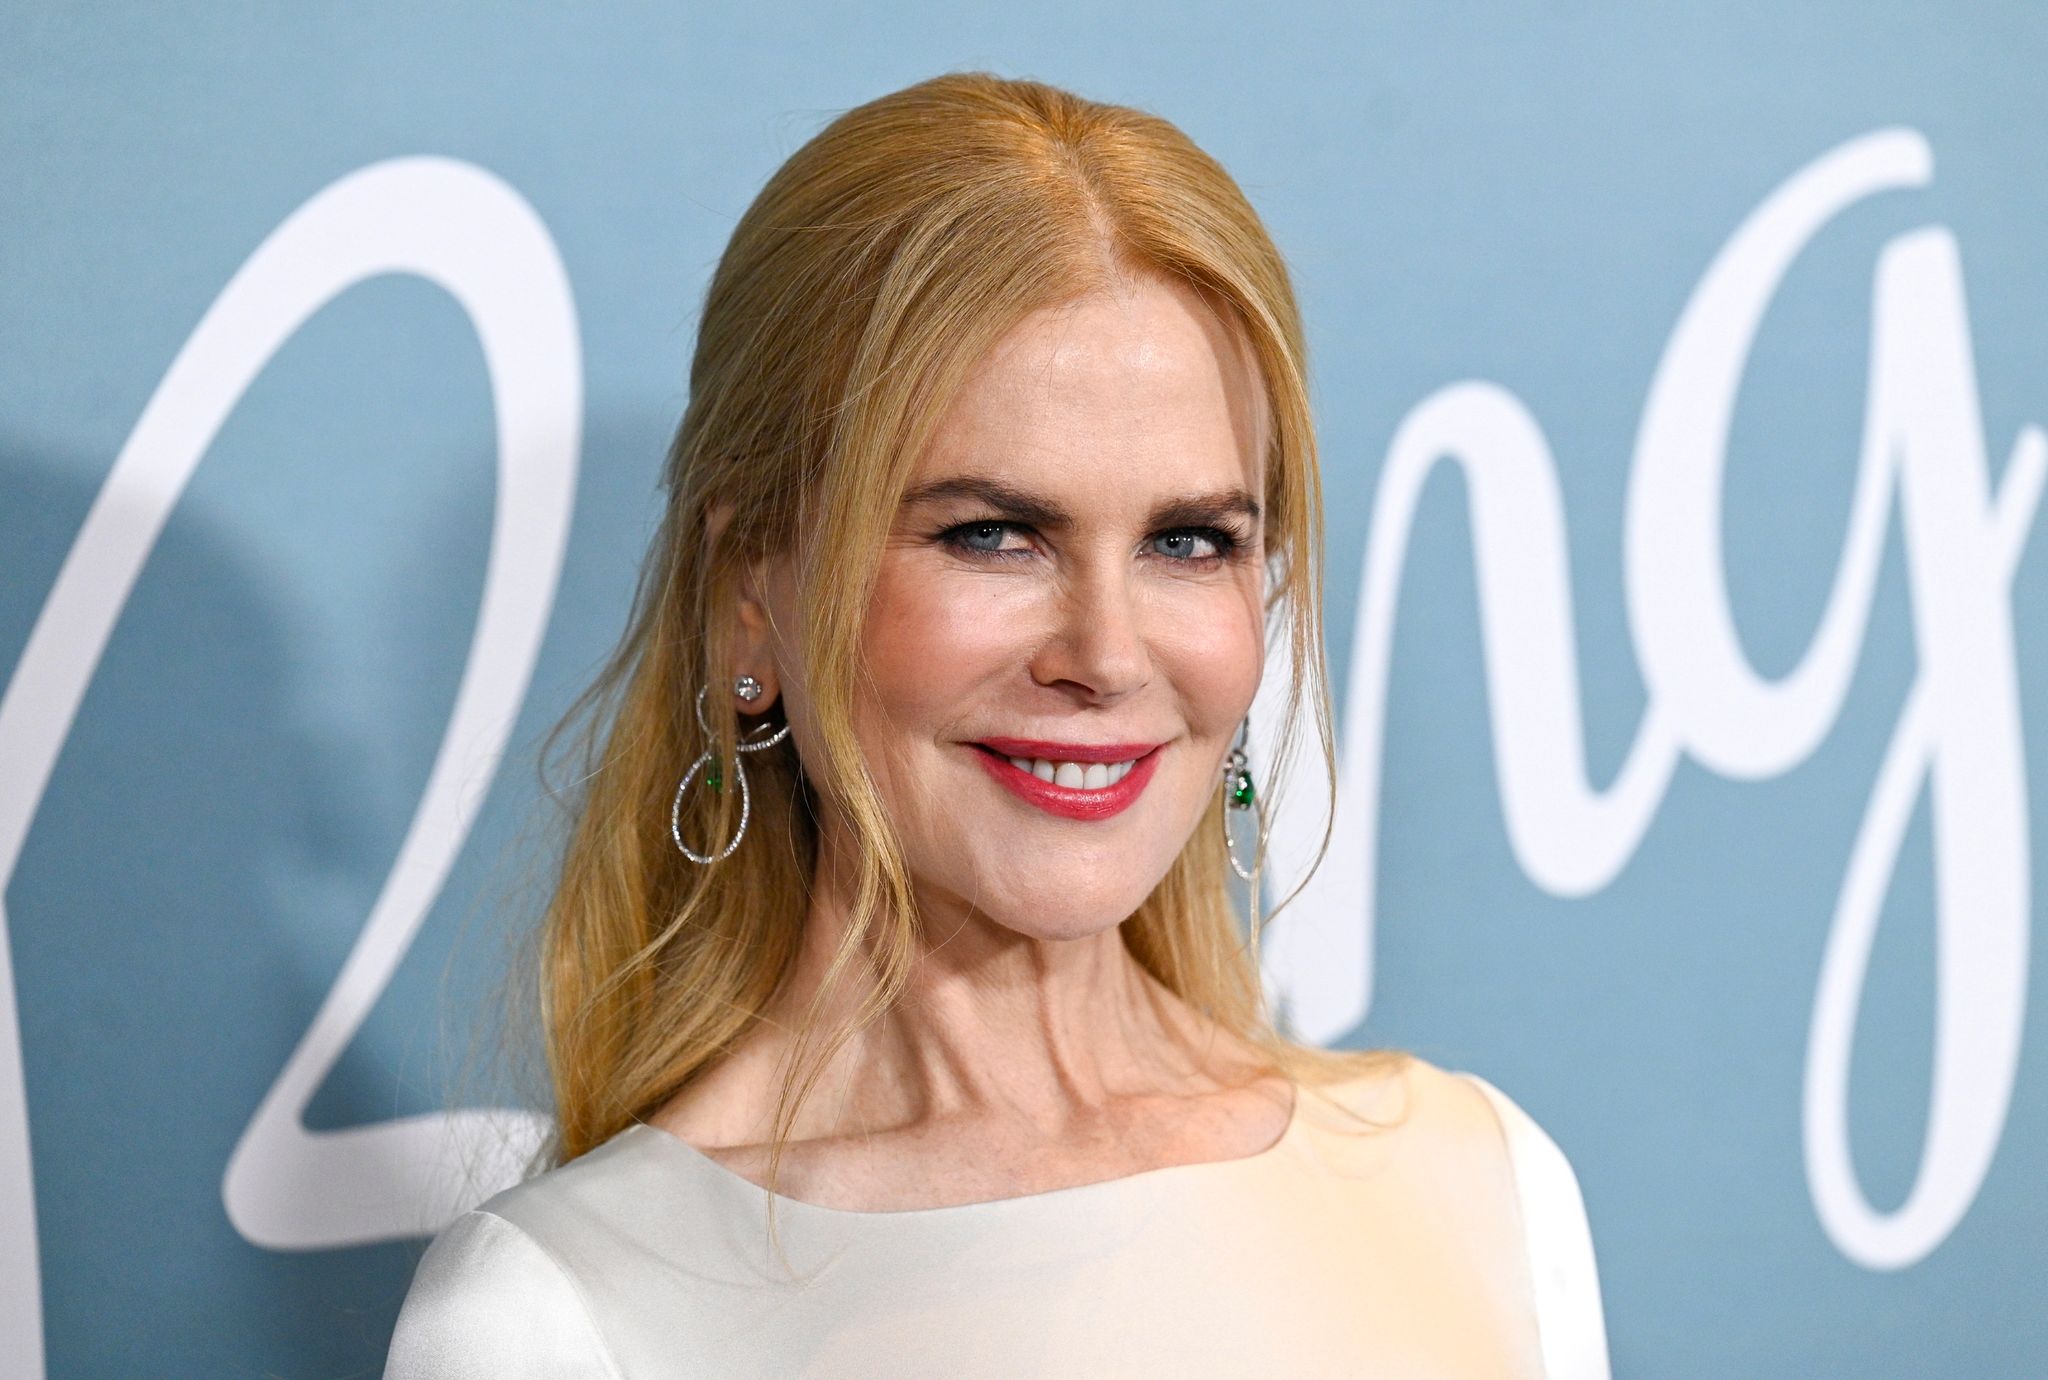 Schauspielerin Nicole Kidman soll einen Preis für ihr Lebenswerk erhalten.